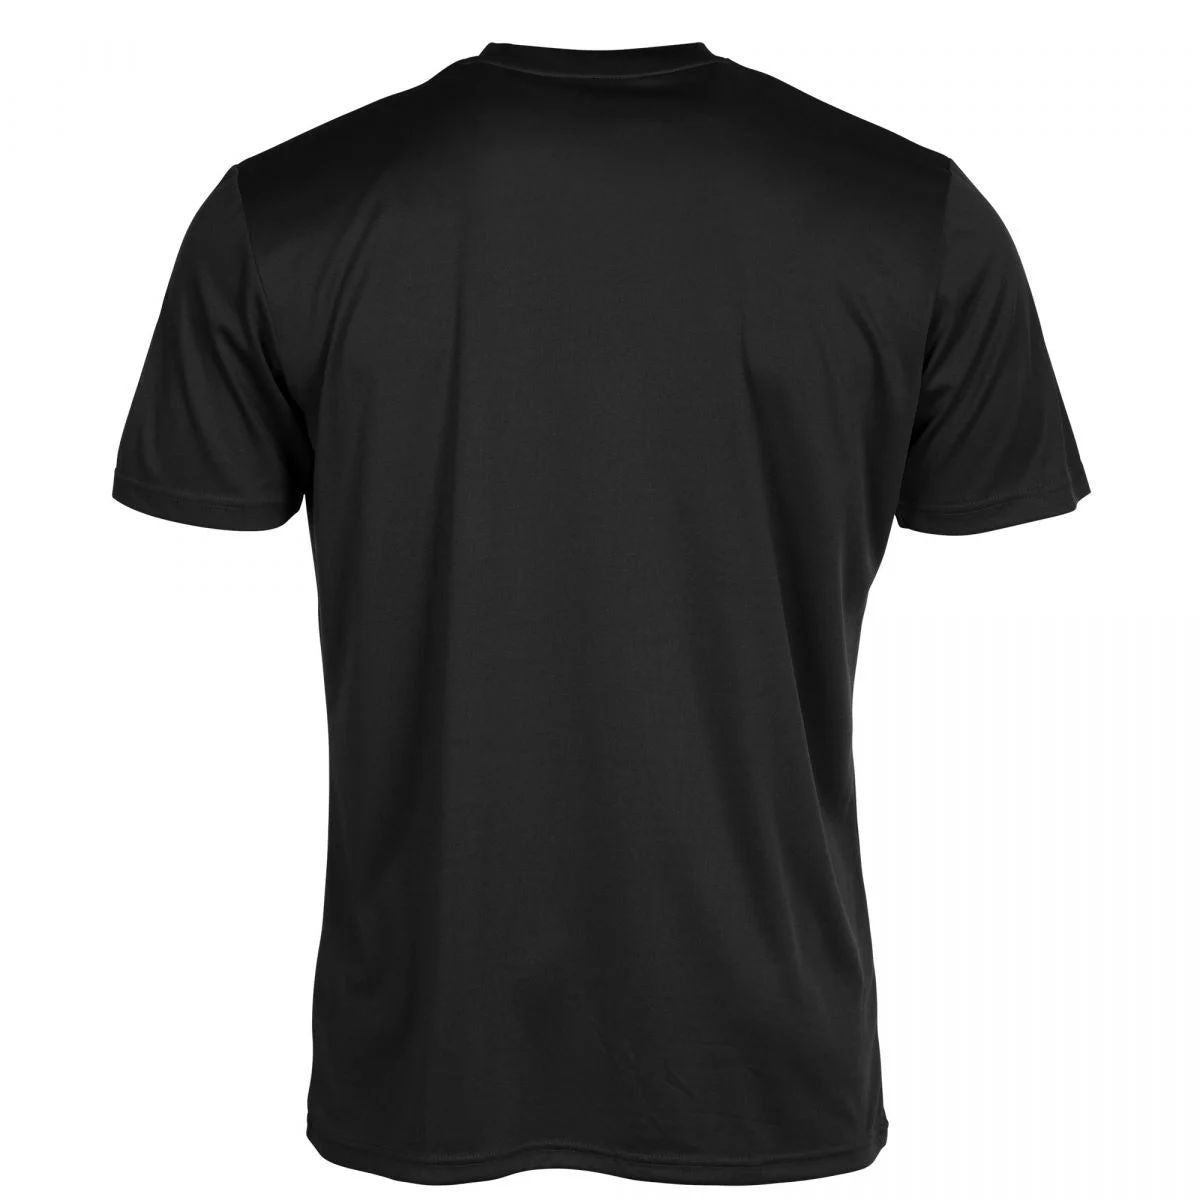 Stanno - Field Shirt - Black